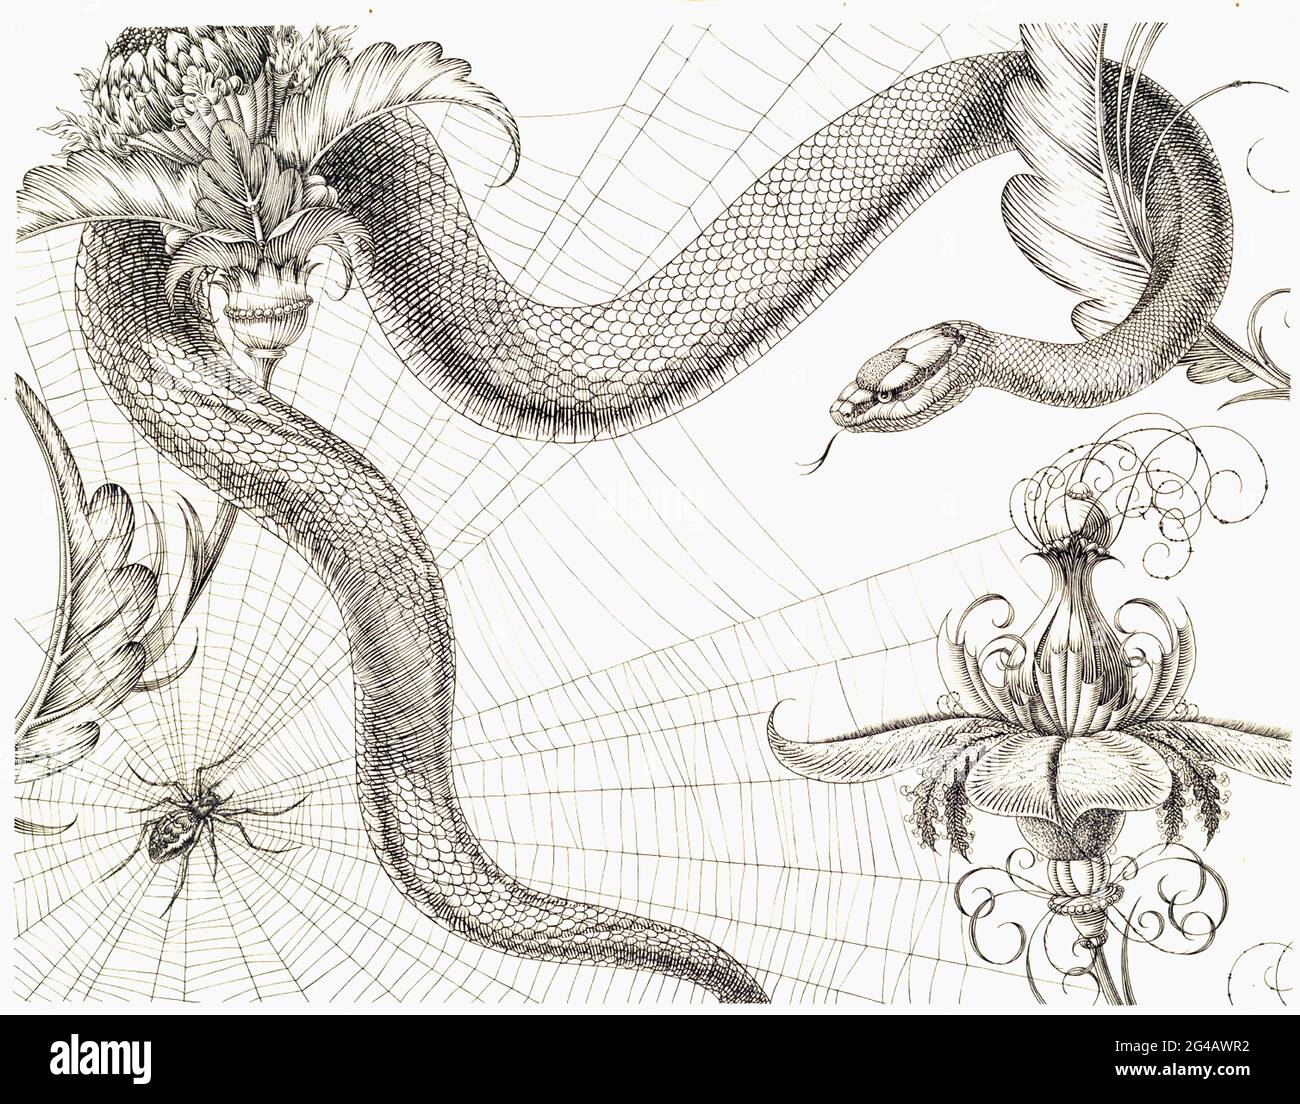 Henry Weston Keen - Spider, Web, Snake and Flowers - die Herzogin von Malfi - c1930 Stockfoto